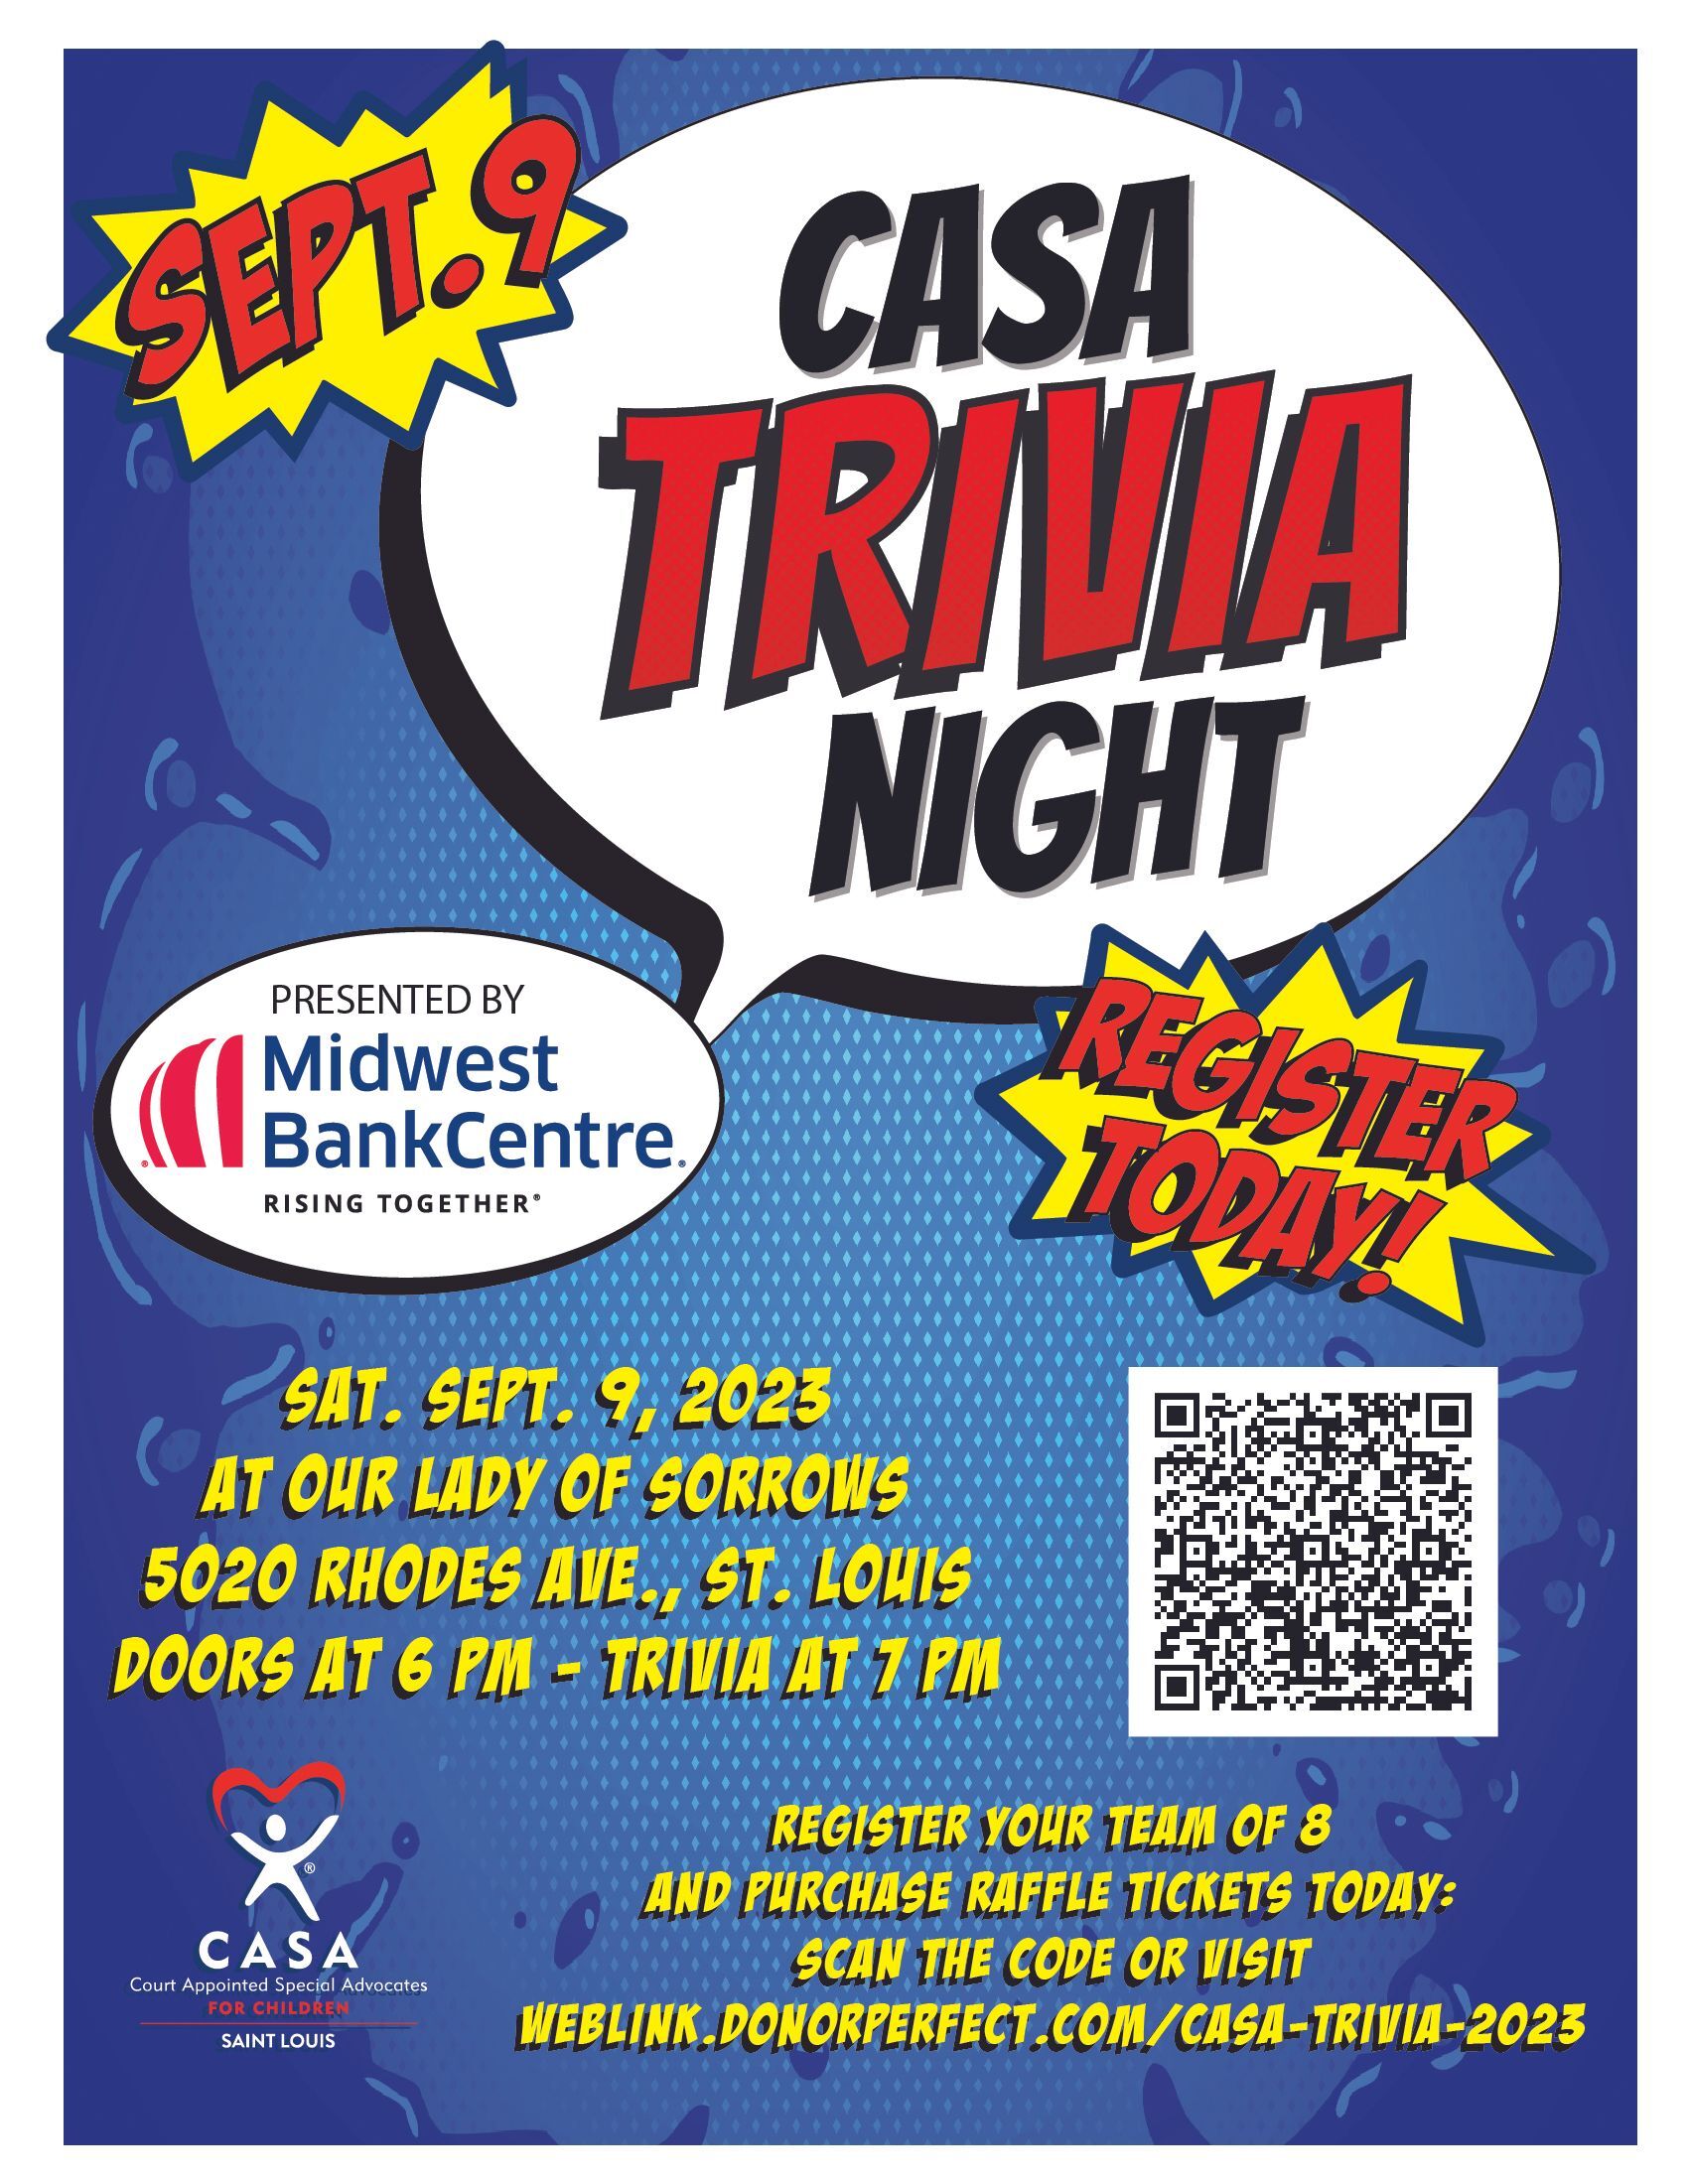 CASA Trivia Night Flyer, September 9